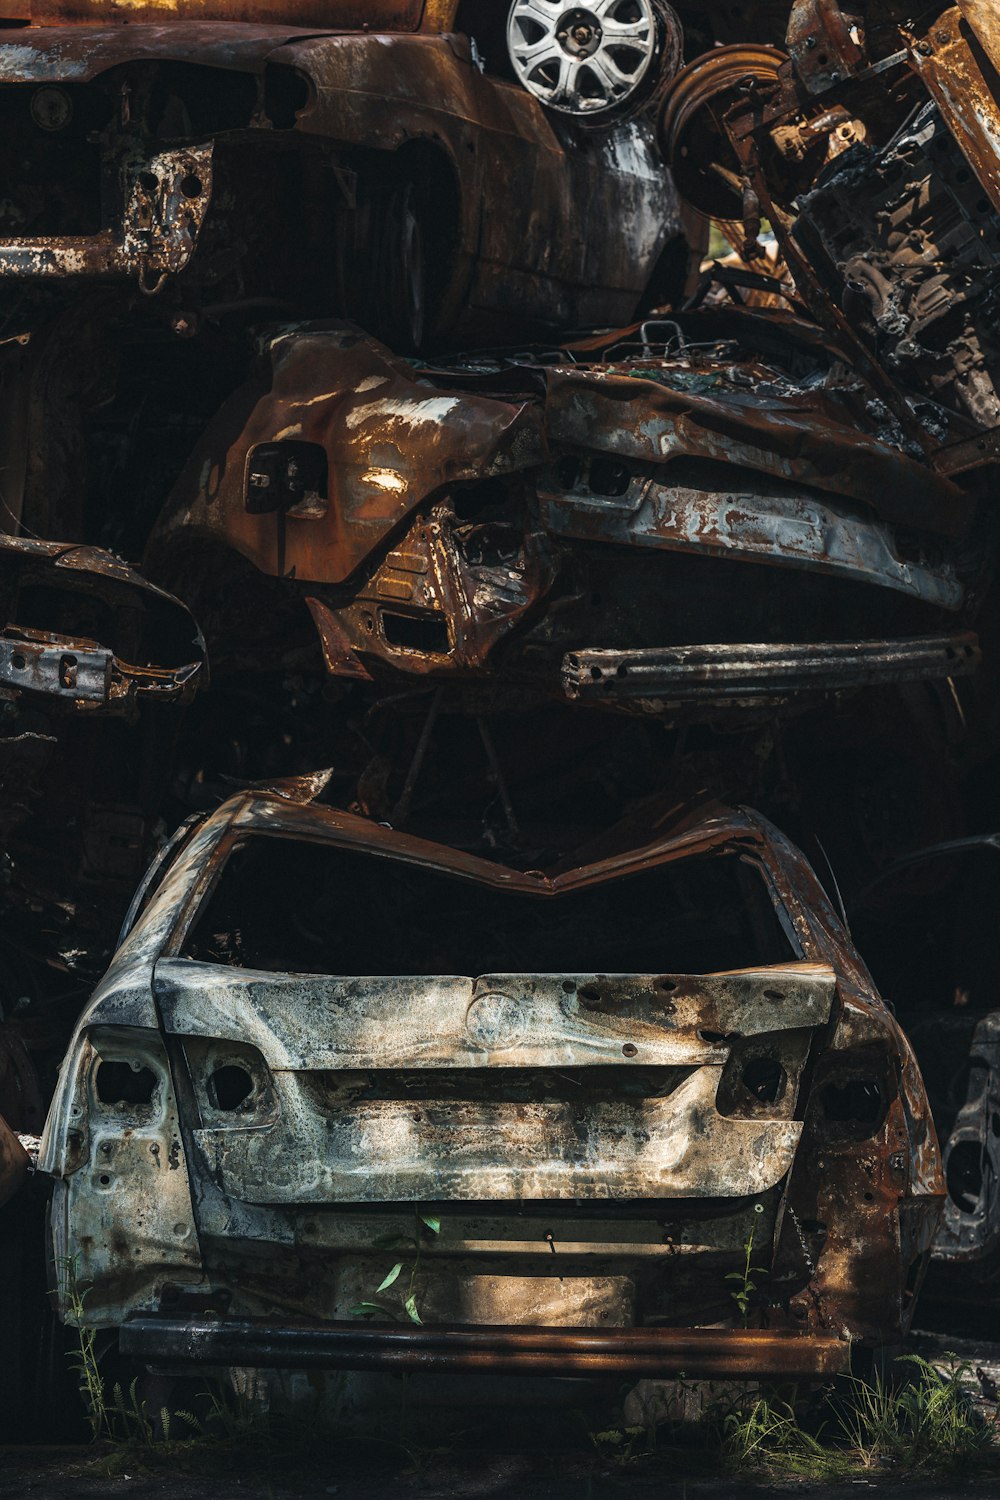 Un coche oxidado con una gran abolladura en la parte delantera